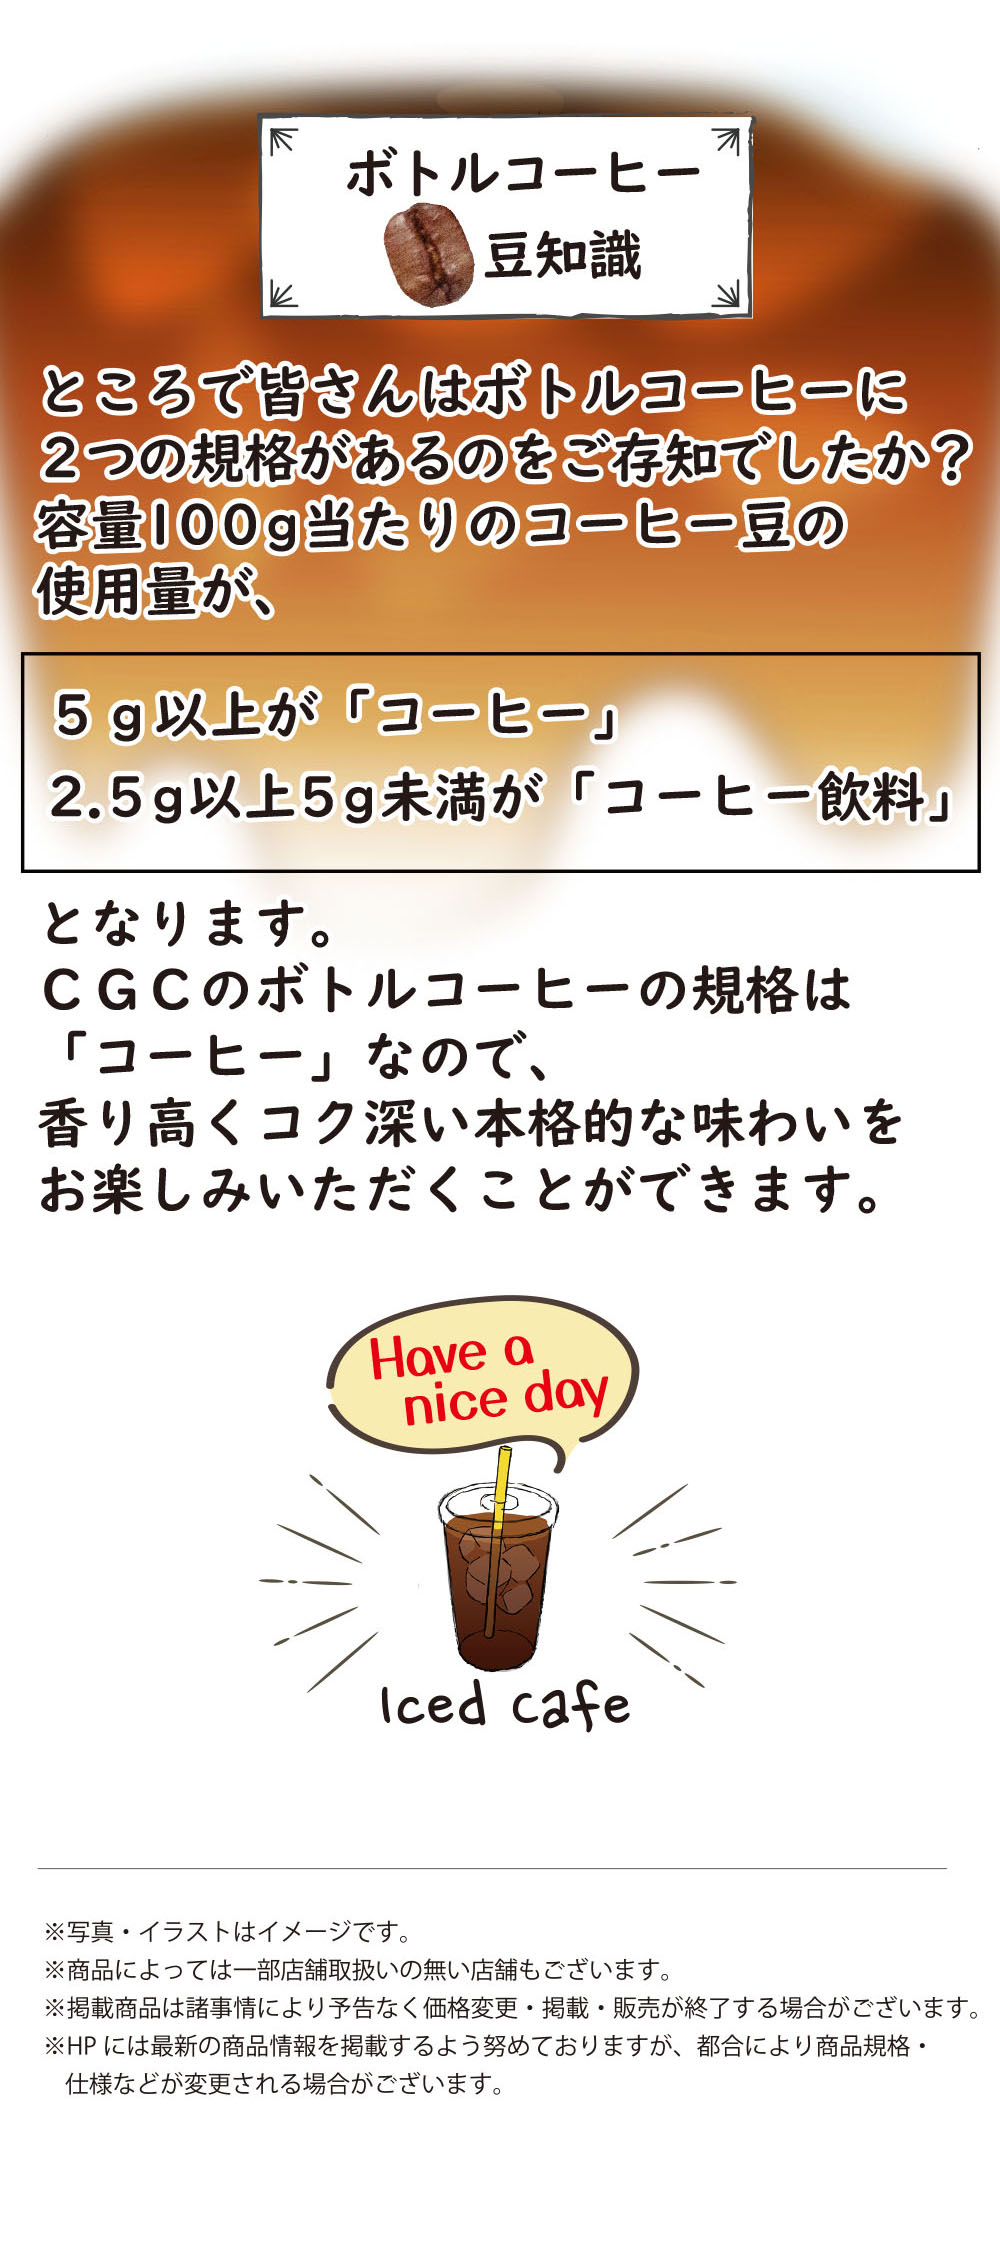 CGC_UCCブレンドコーヒー_無糖・低糖